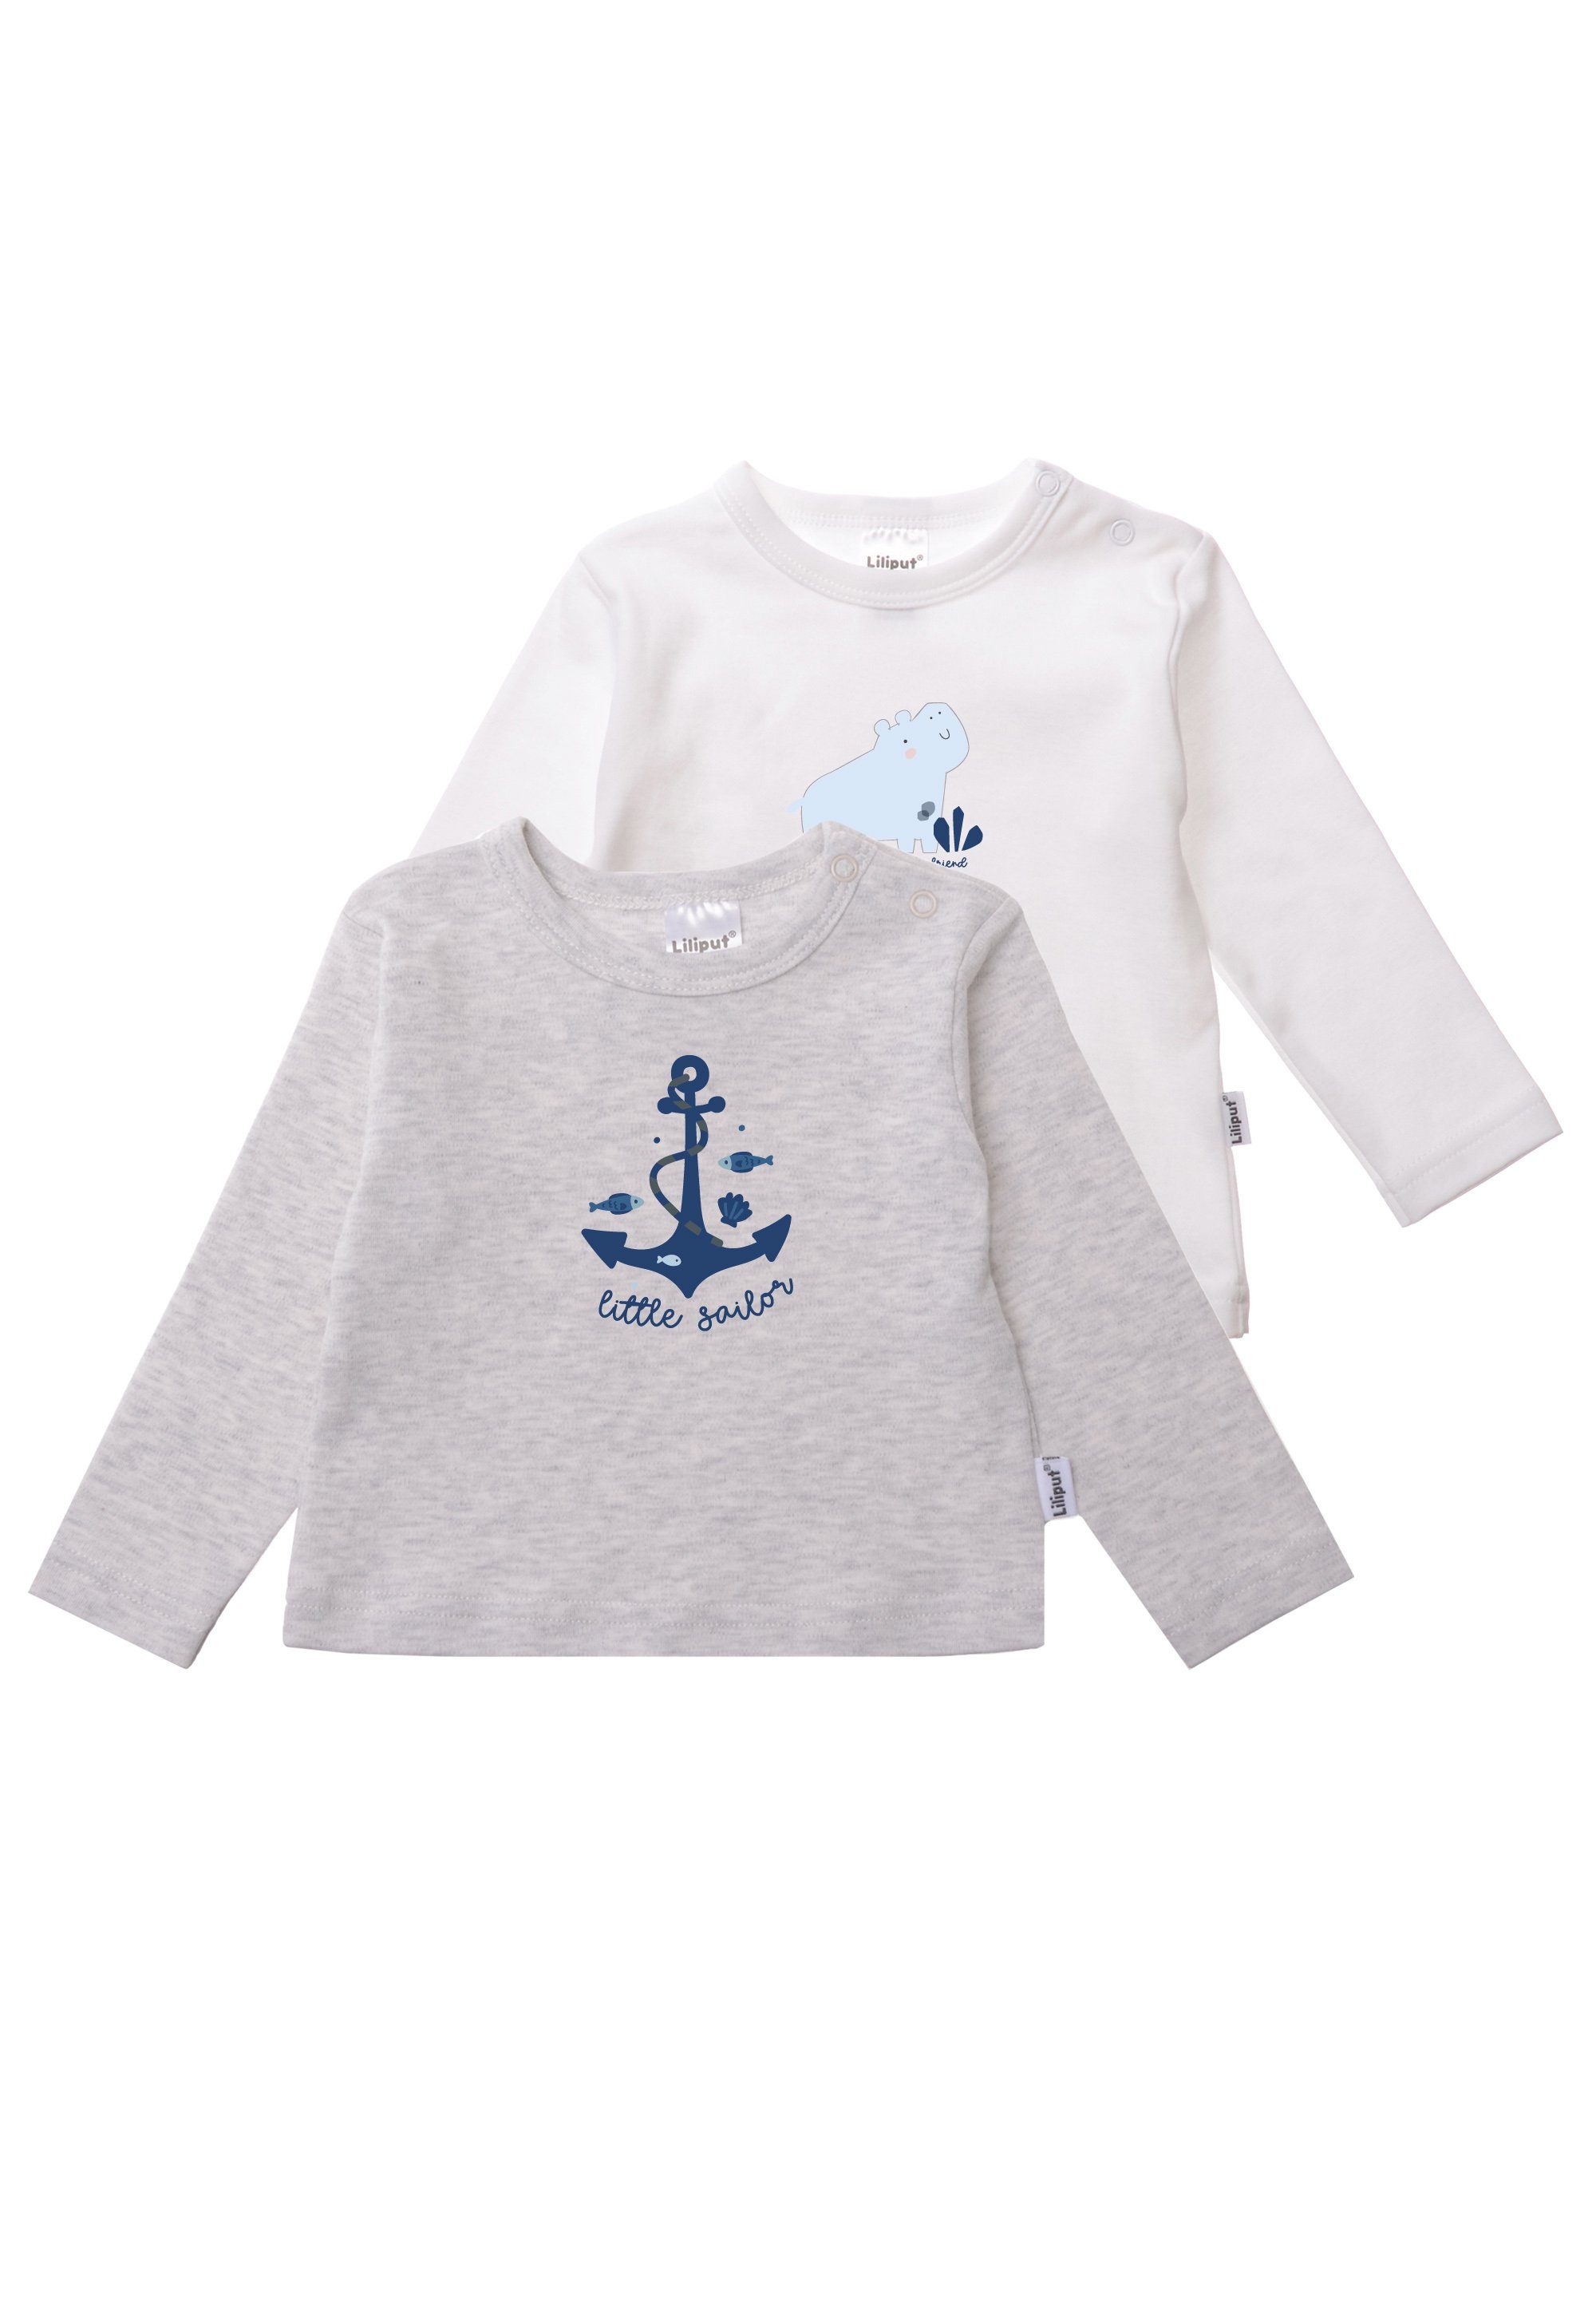 Liliput T-Shirt Little Sailor 2er-Pack aus weichem Baumwoll-Material